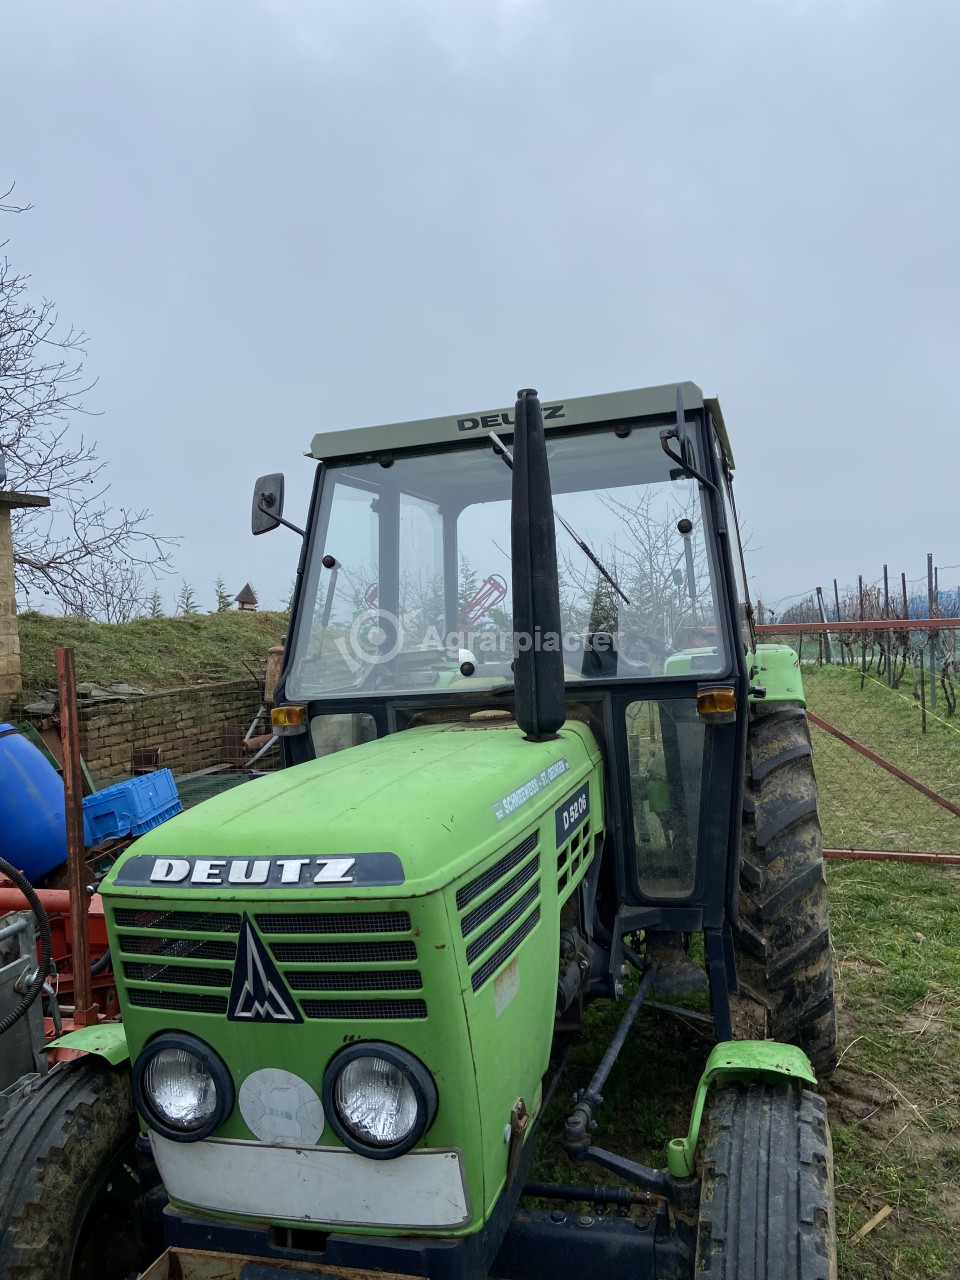 Deutz 5206 Traktor